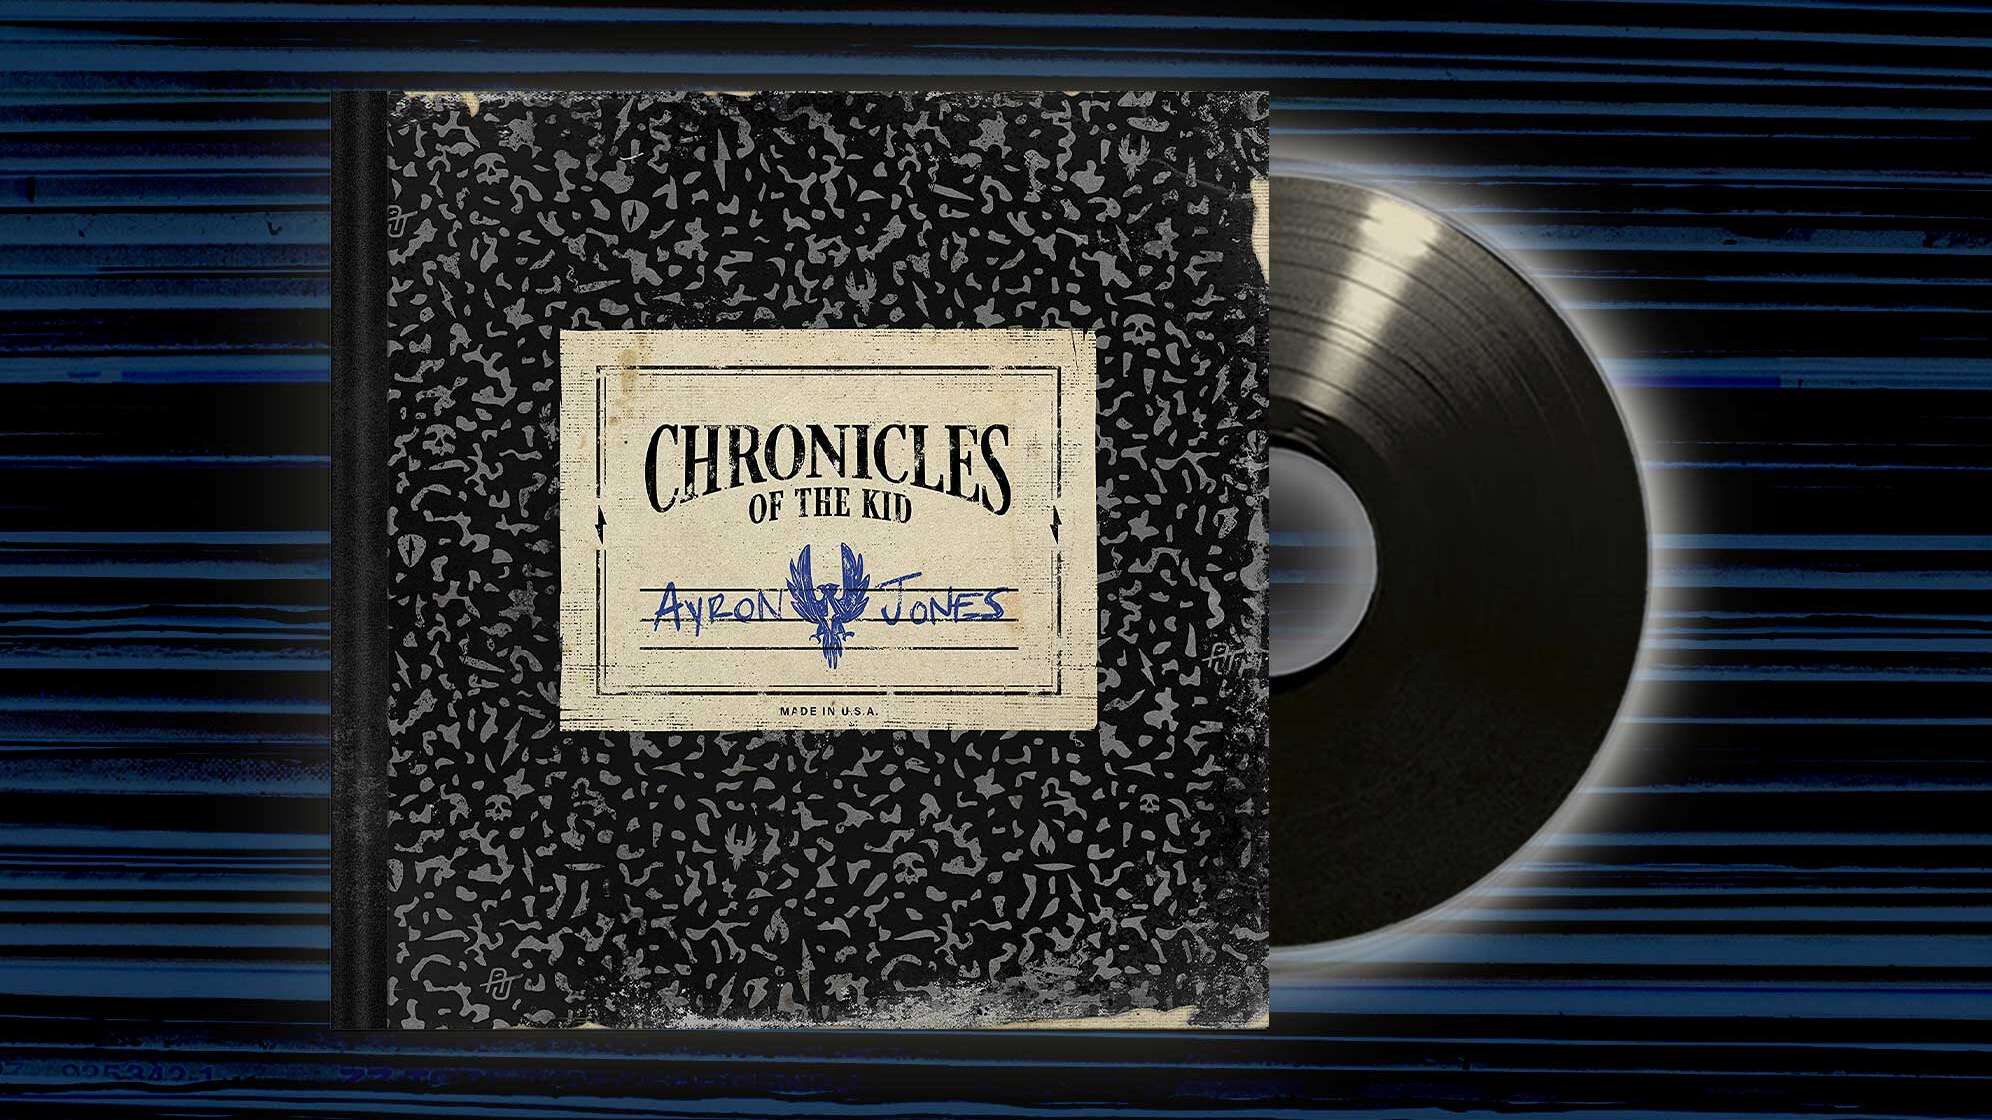 Albumcover von Ayron Jones "Chronicles Of The Kid"-Album, das ein Buchcover zeigt